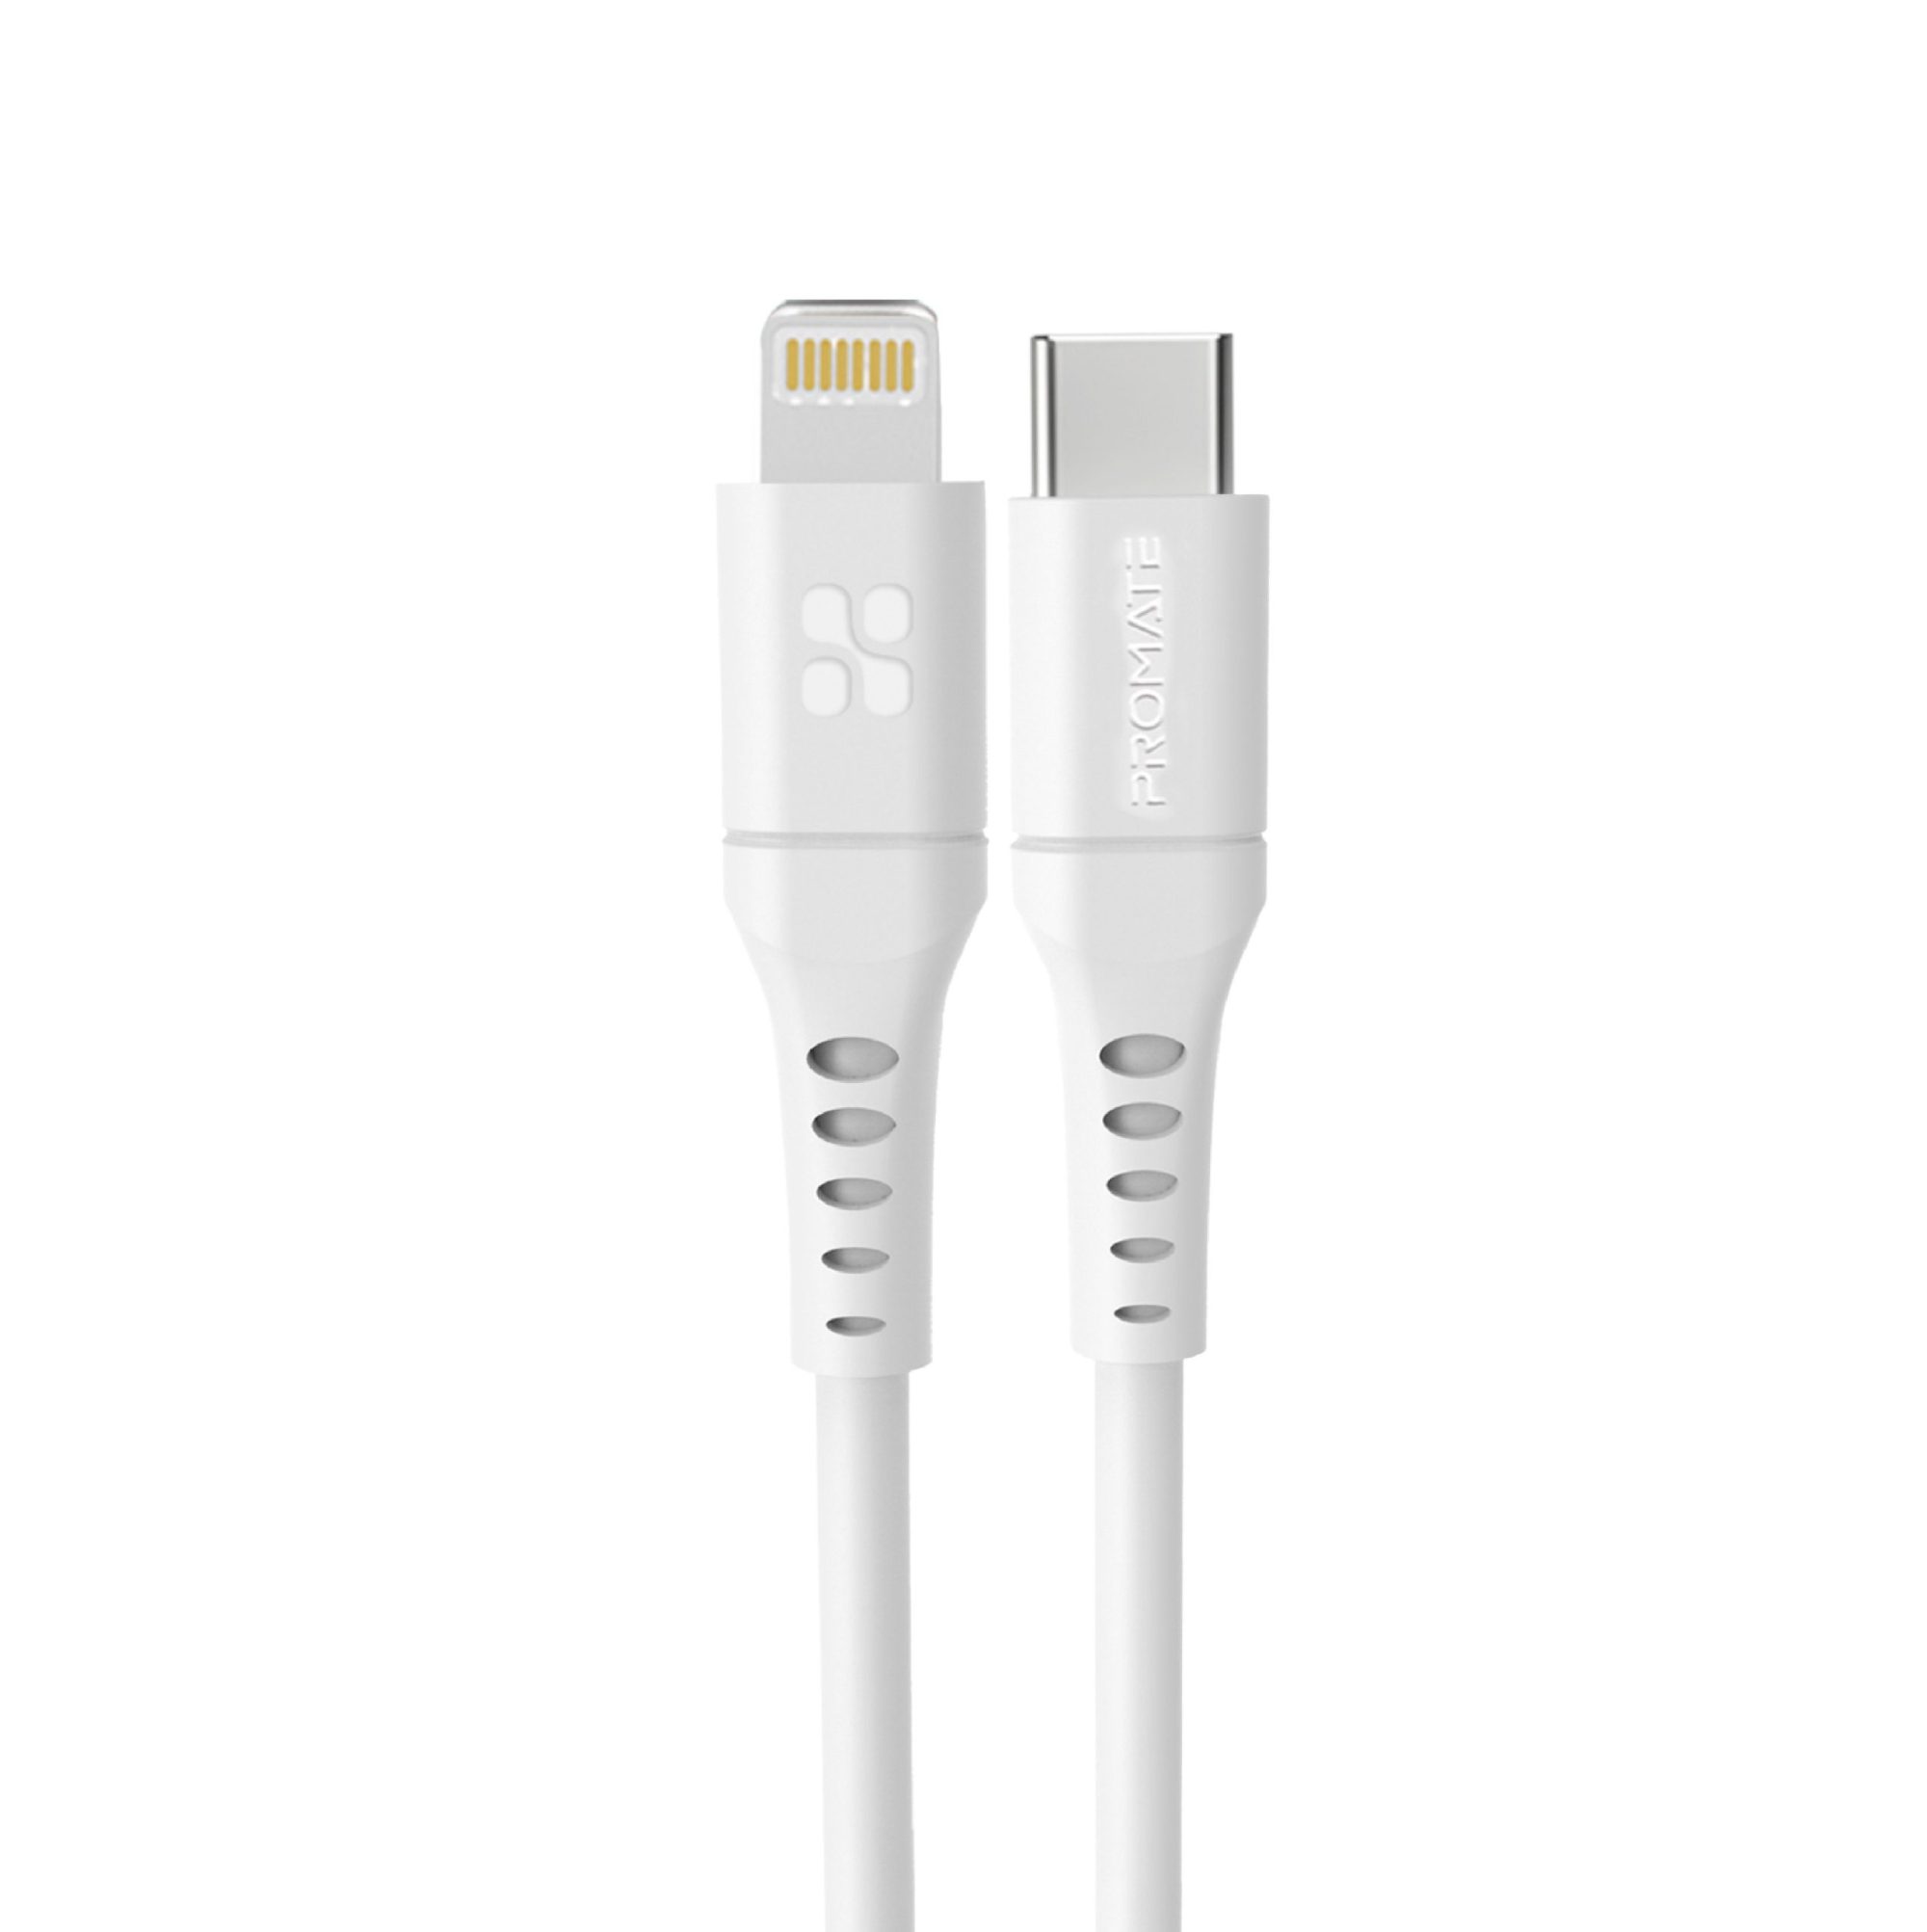 Promate USB-C to Lightning Cable 2m, Powerful 20W Power Delivery Fast Charging Silicone Lightning Cable with 480 Mbps Data Sync and 3A Power Output for iPhone 13/13 Pro/13 Pro Max, iPad Pro, PowerLink-200 White